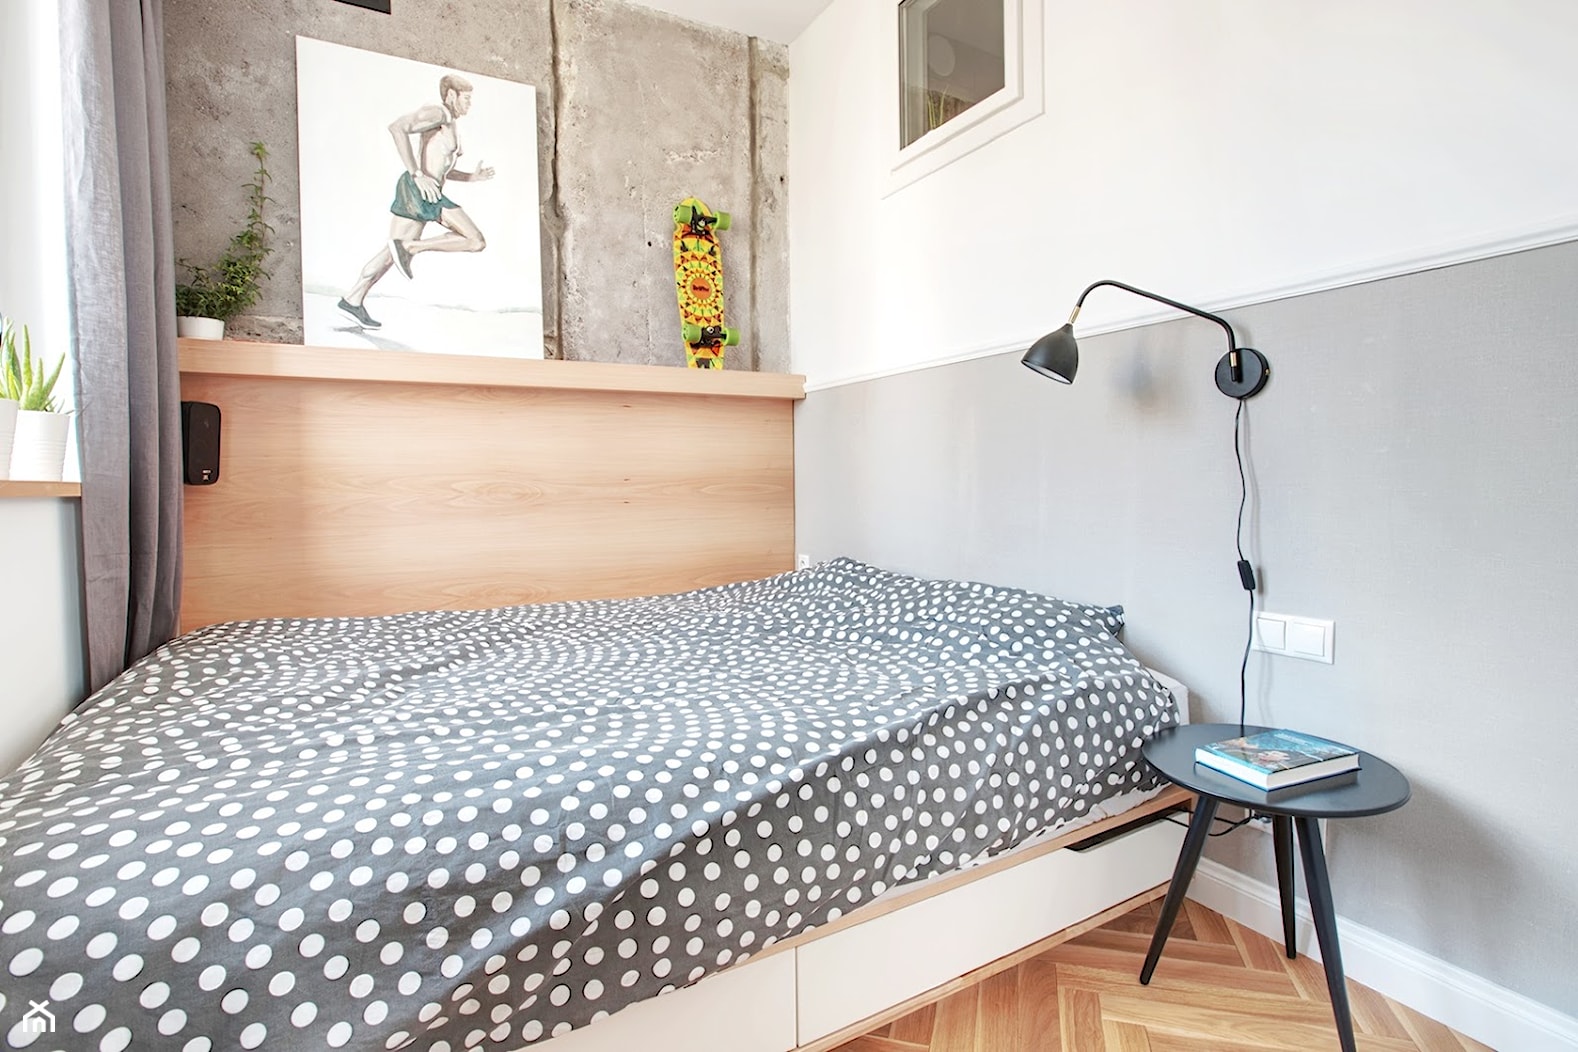 NOWE MIESZKANIE NA SASKIEJ KĘPIE - Mała biała szara sypialnia, styl nowoczesny - zdjęcie od Piotr Motrenko - Homebook